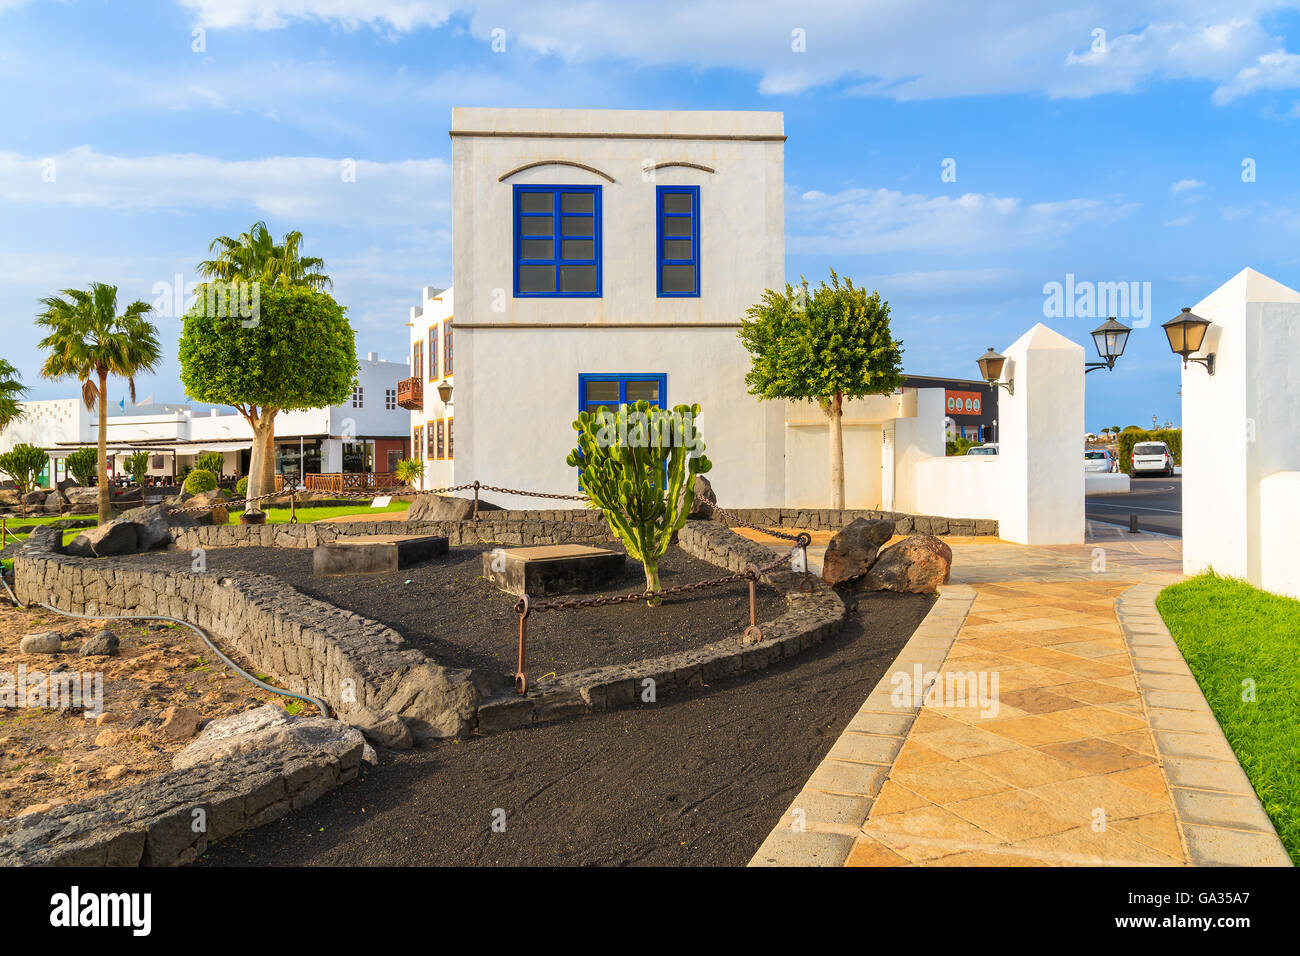 MARINA RUBICON, Lanzarote - Jan 11, 2015: tipica canaria edifici nella porta Rubicone, Playa Blanca. Lanzarote è molto popolare meta di vacanza nell arcipelago delle isole Canarie a causa di condizioni meteo soleggiate. Foto Stock